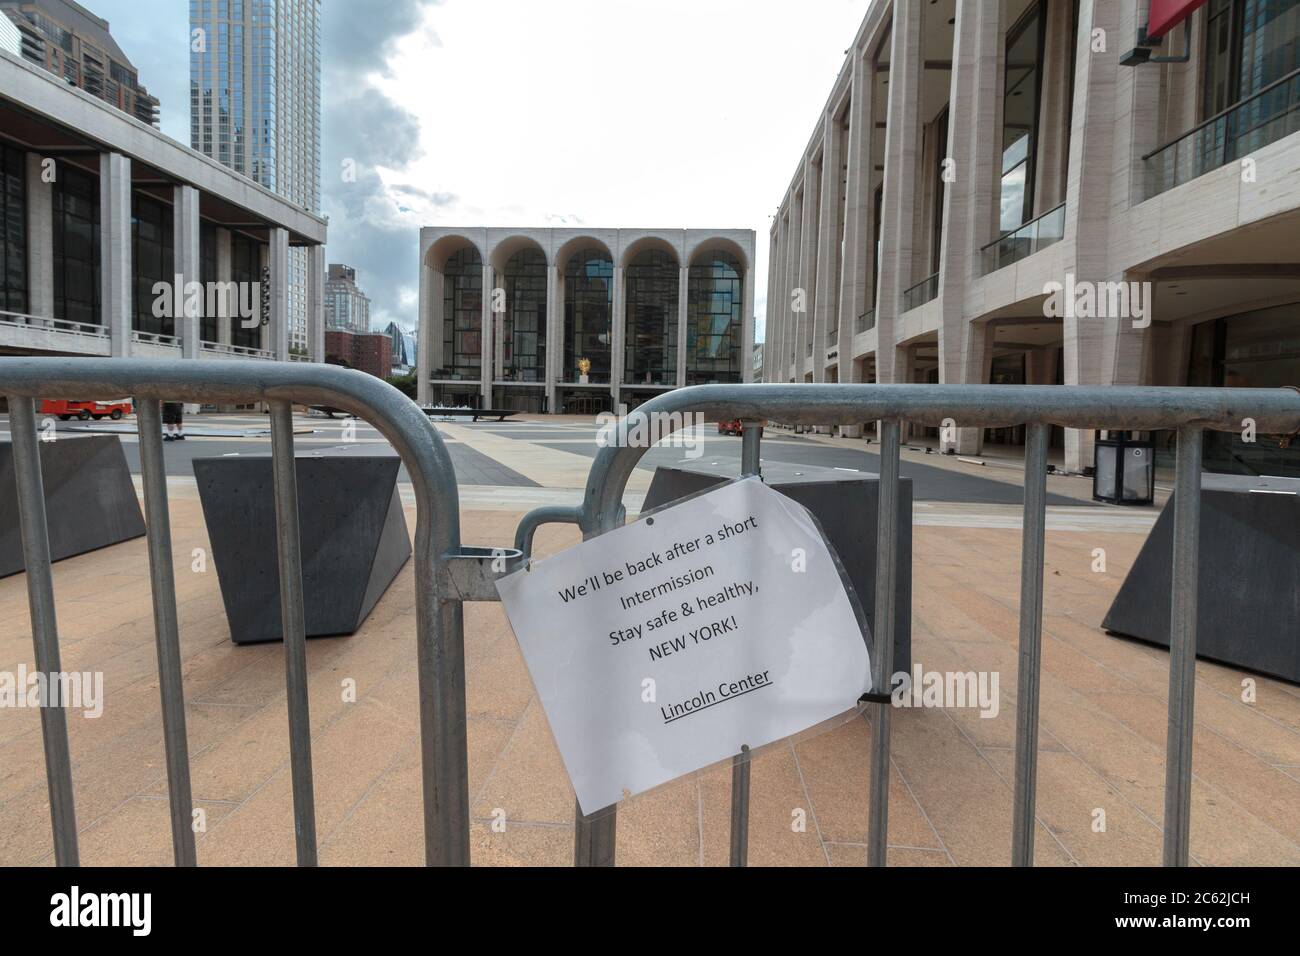 Sarkastisches Schild an einer Barriere vor dem metropolitanen Opernhaus, geschlossen wegen des Coronavirus oder der Pandemie Covid-19, dass es sich in der Pause befindet Stockfoto